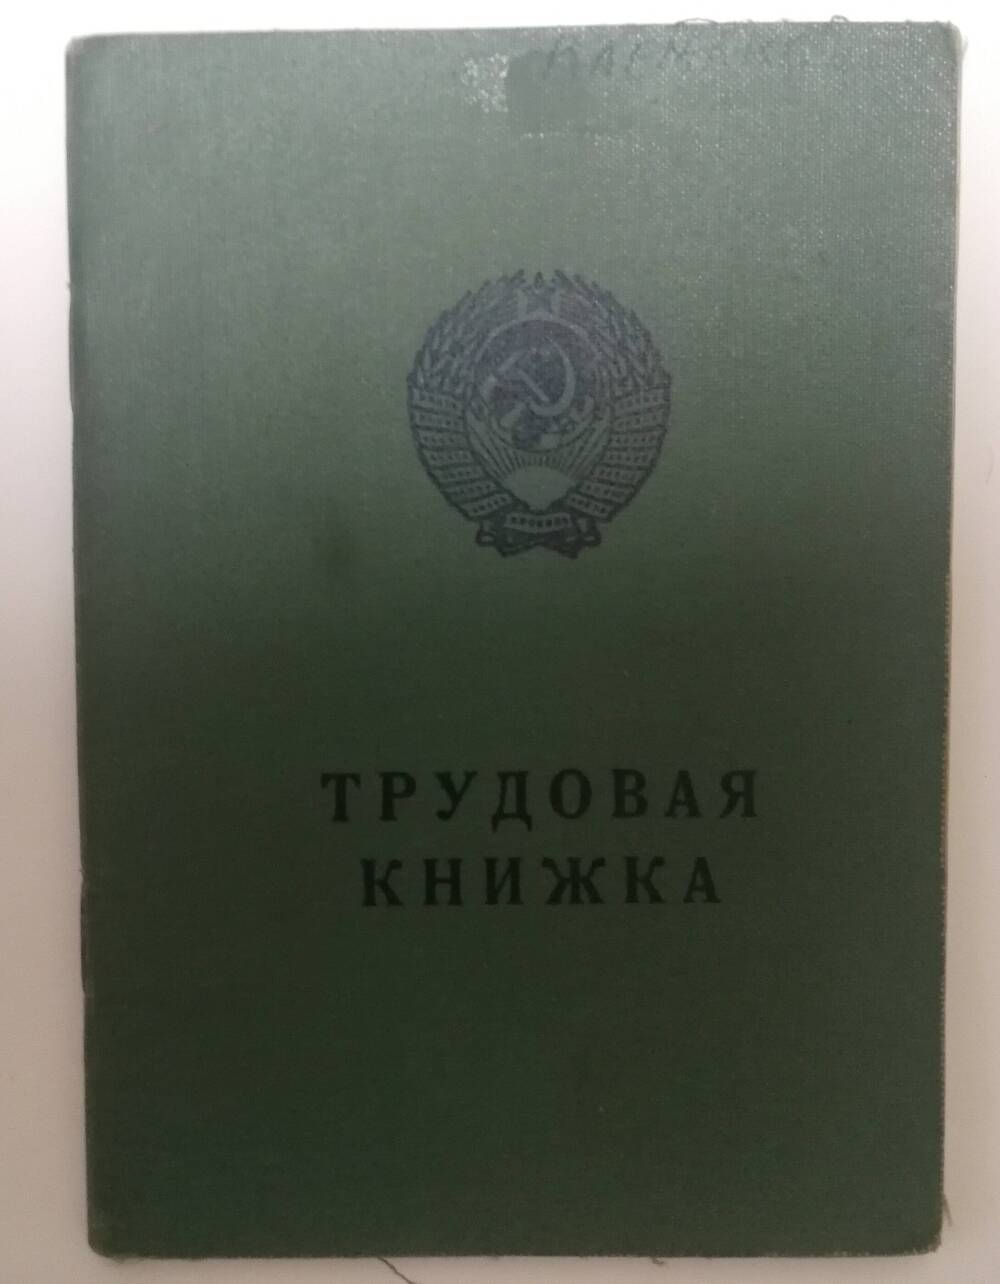 Документ: «Трудовая книжка» на имя Кармакова Сергея Борисовича.